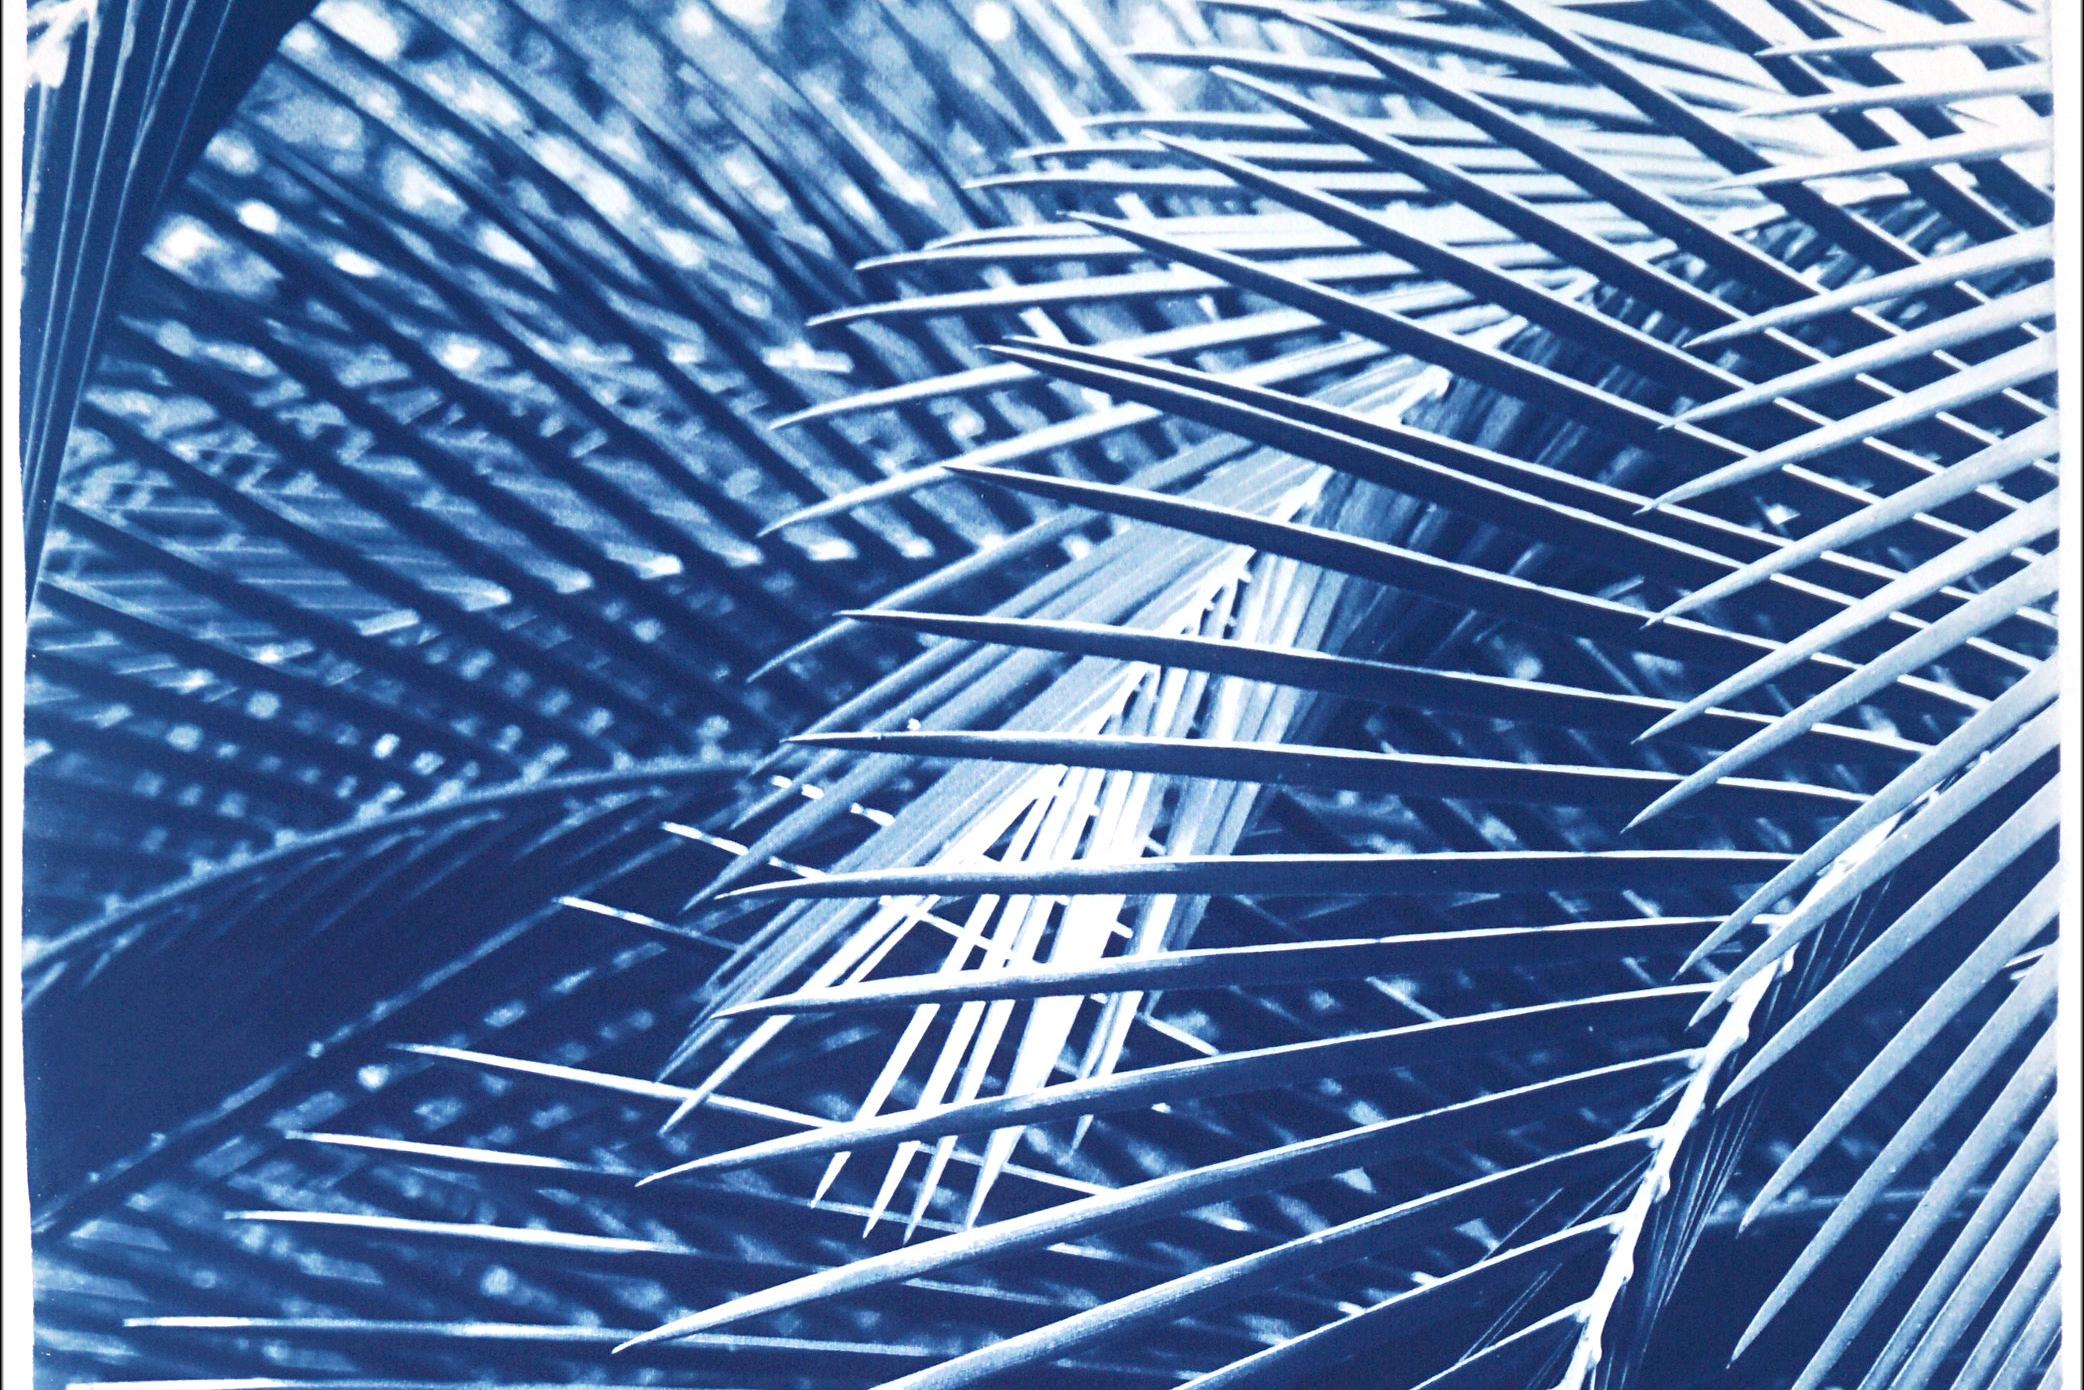 Il s'agit d'un cyanotype exclusif imprimé à la main en édition limitée de belles feuilles de palmier. 

Détails :
+ Titre : Motif de palmier Majesty
+ Année : 2021
+ Taille de l'édition : 100
+ Tampon et certificat d'authenticité fournis
+ Mesures :